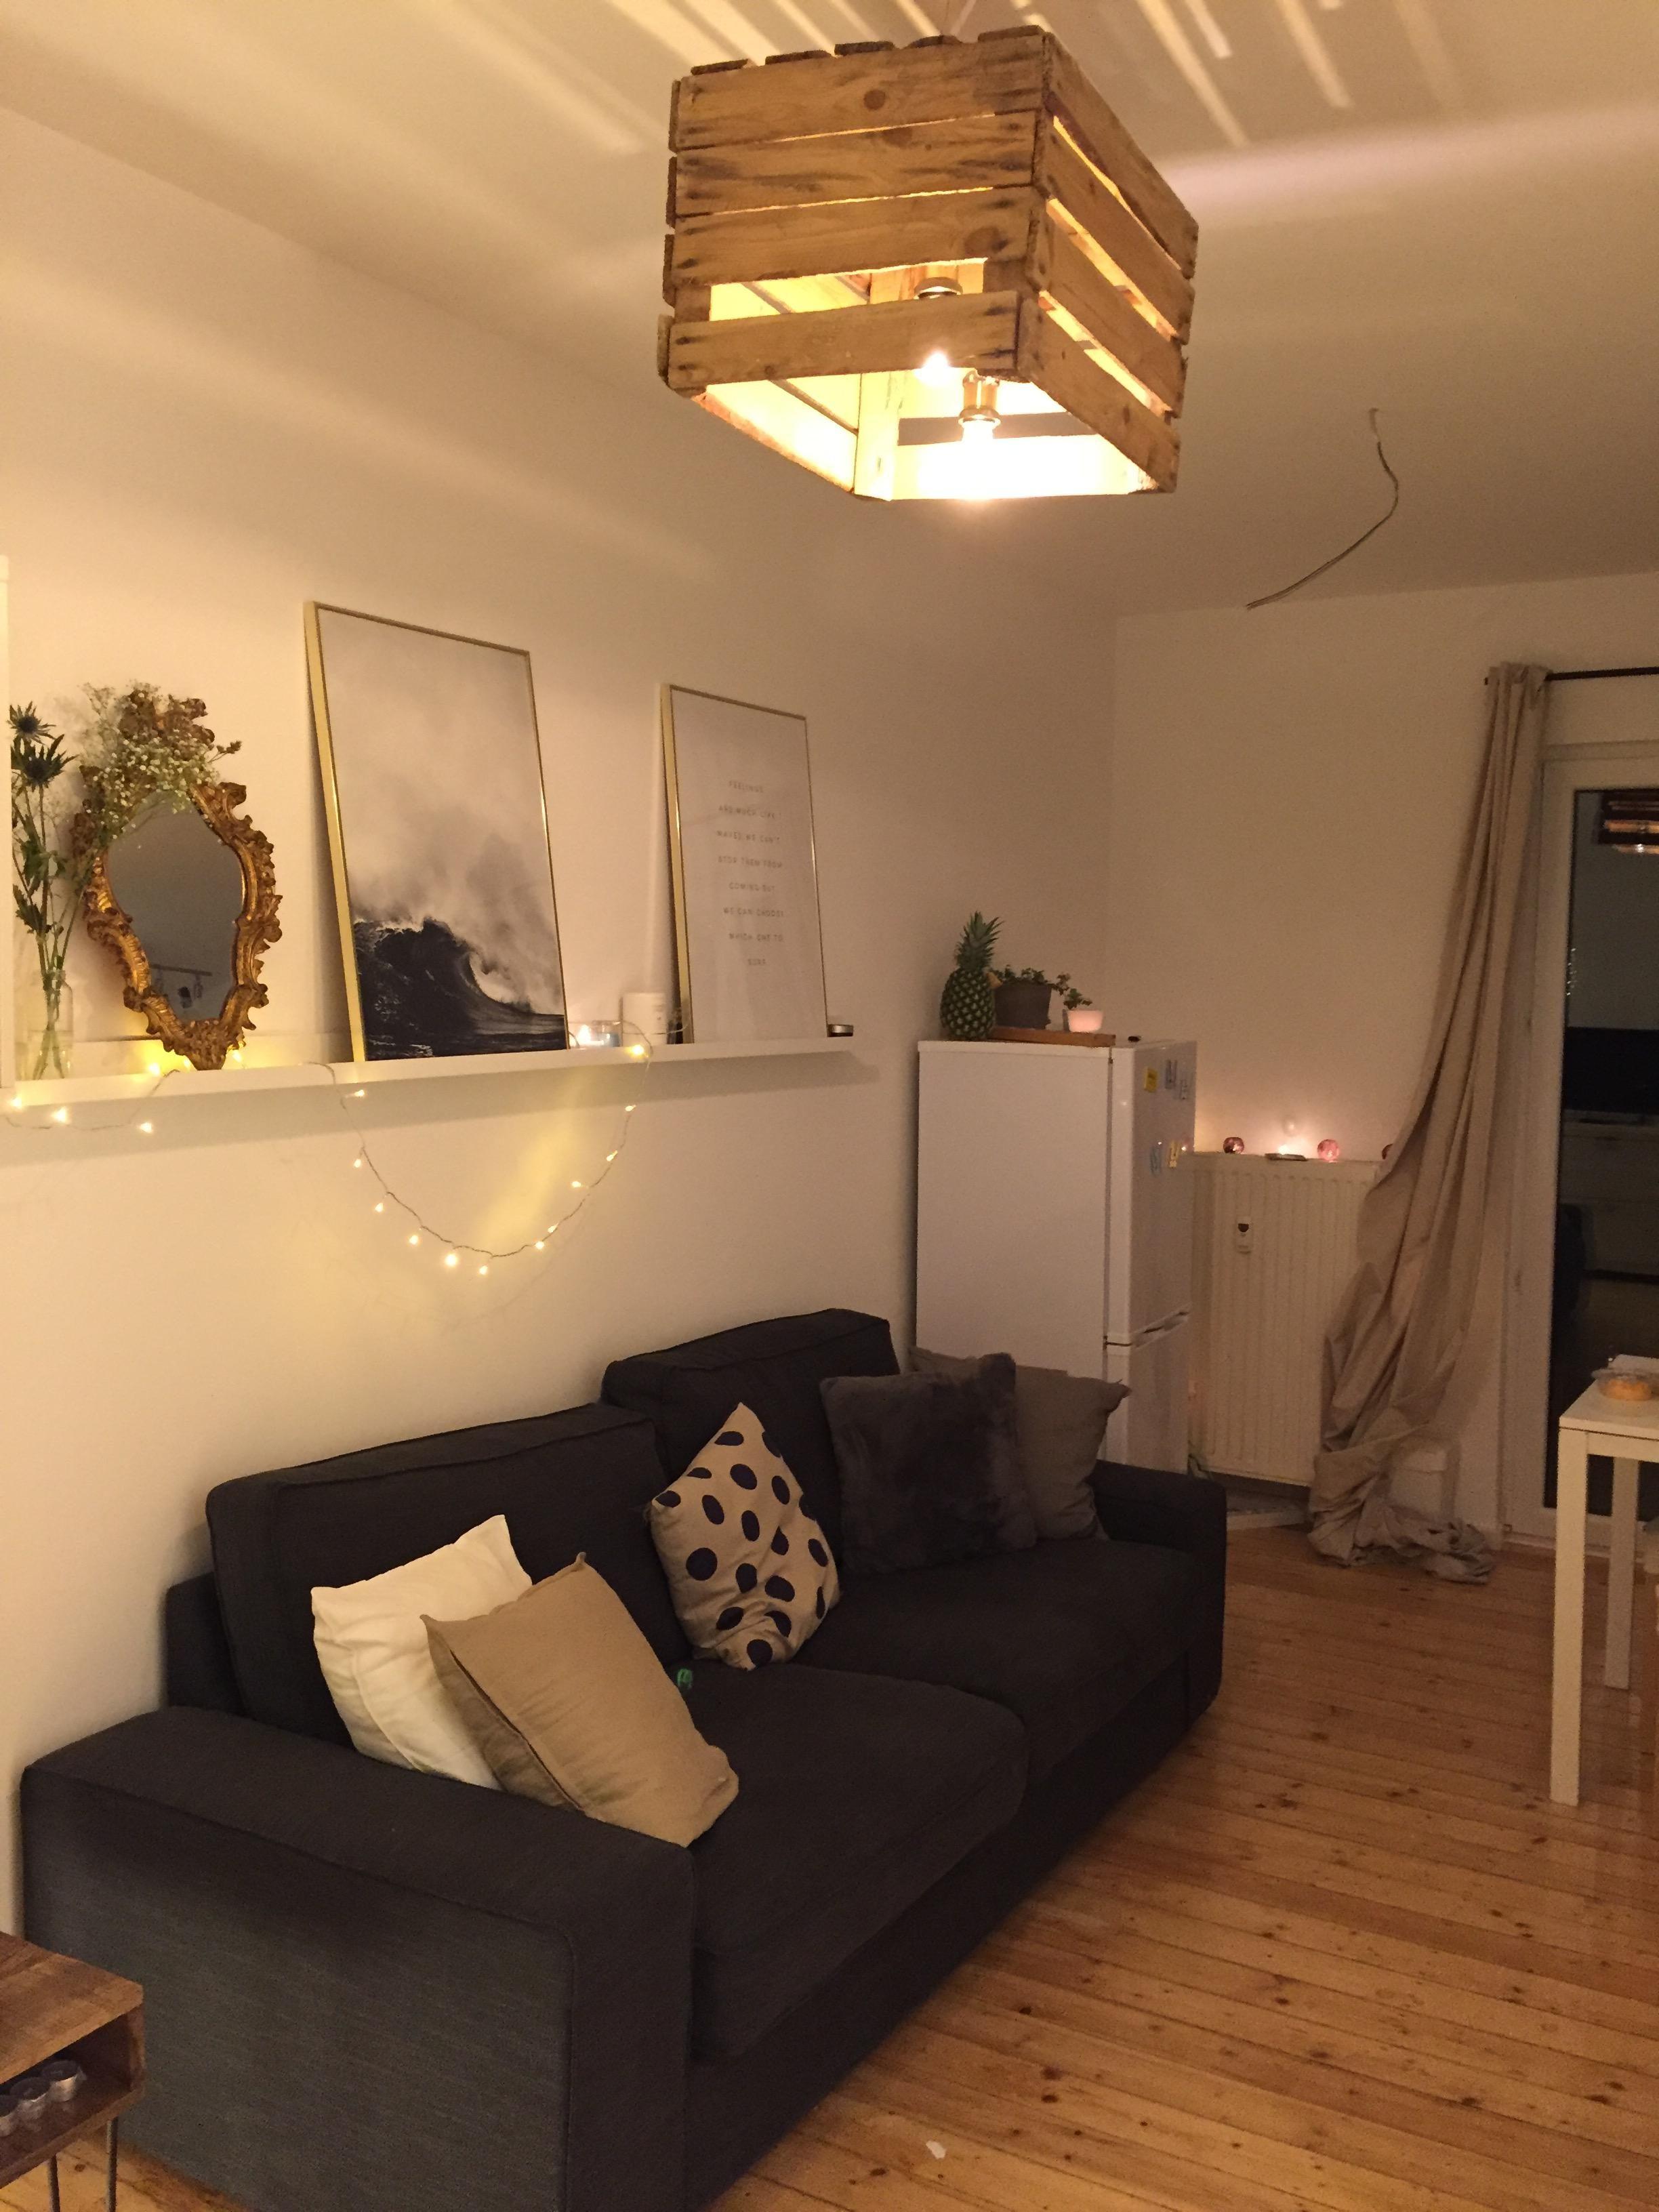 Wohnzimmer mit #diy Lampe. #ikea #desenio #scandi #livingroom #cozy